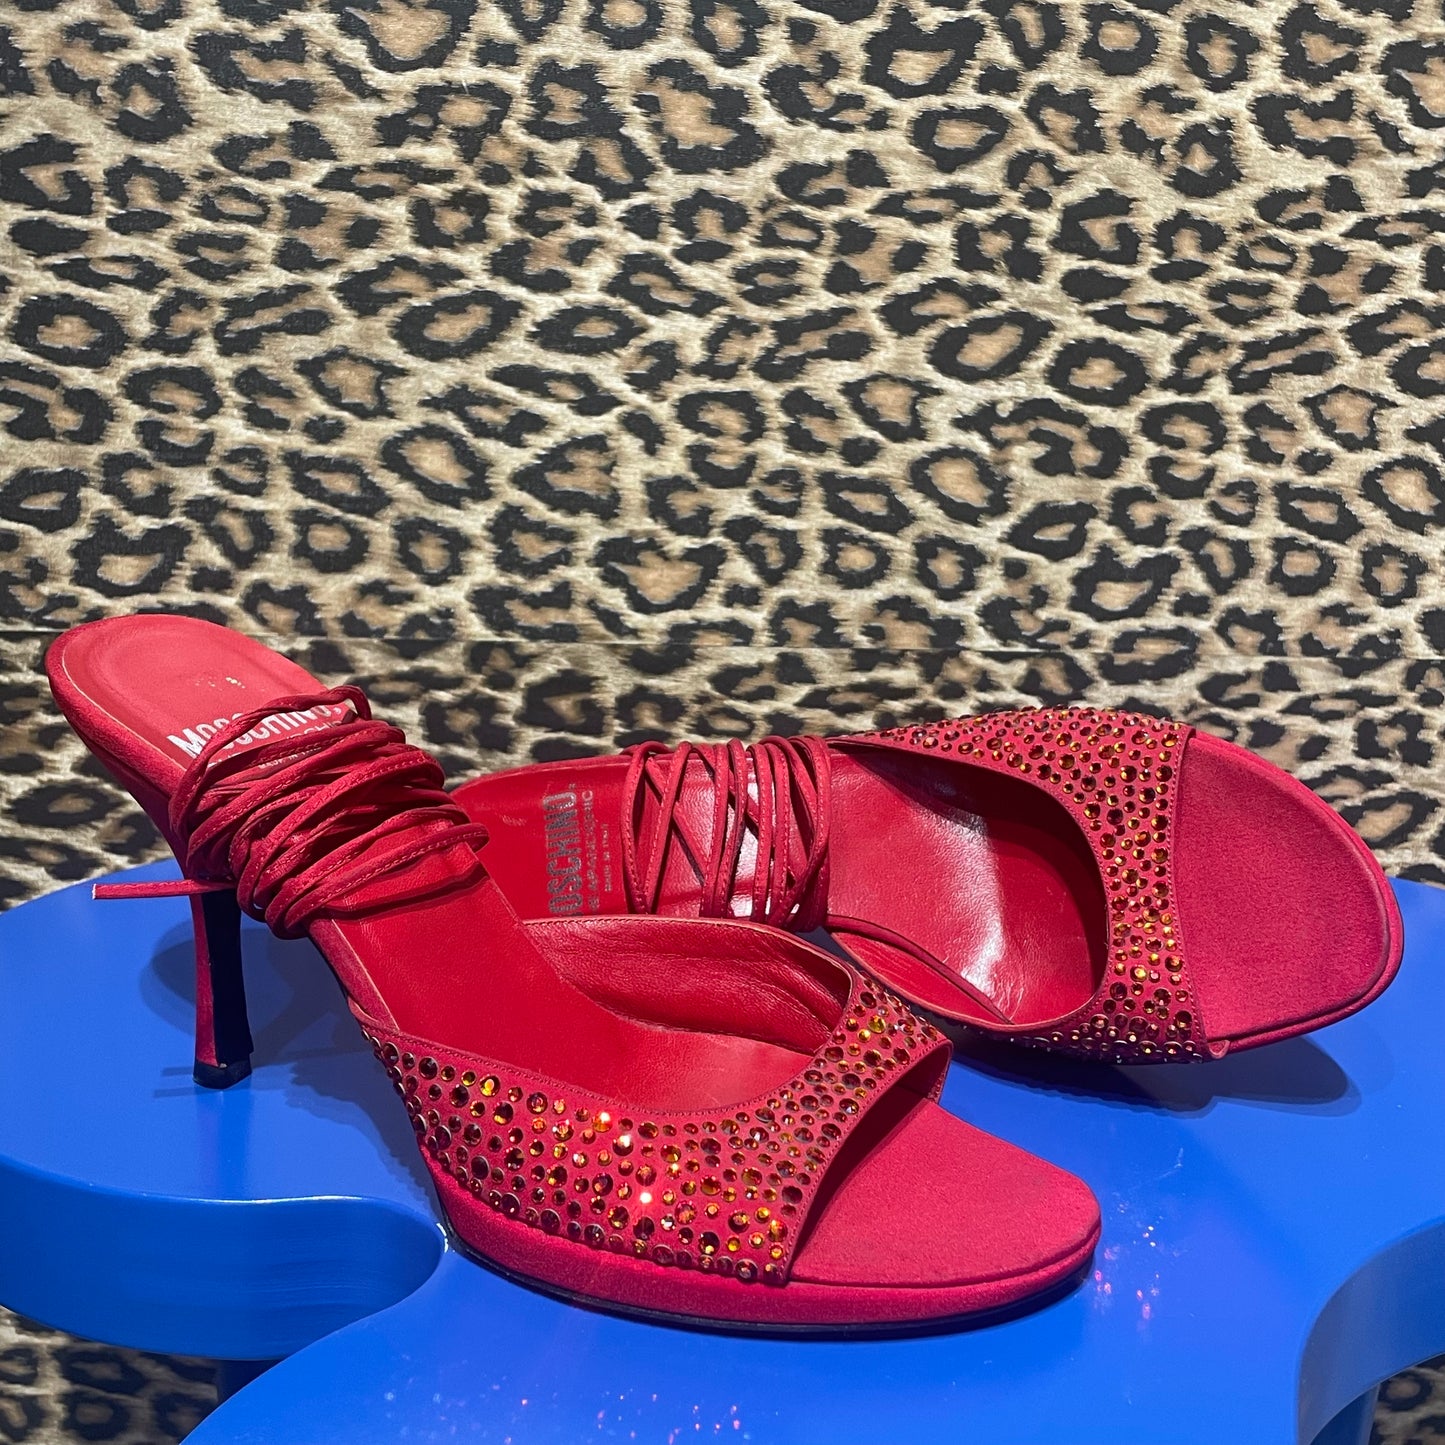 Moschino Cheap & Chic Rhinestone Sandals 39